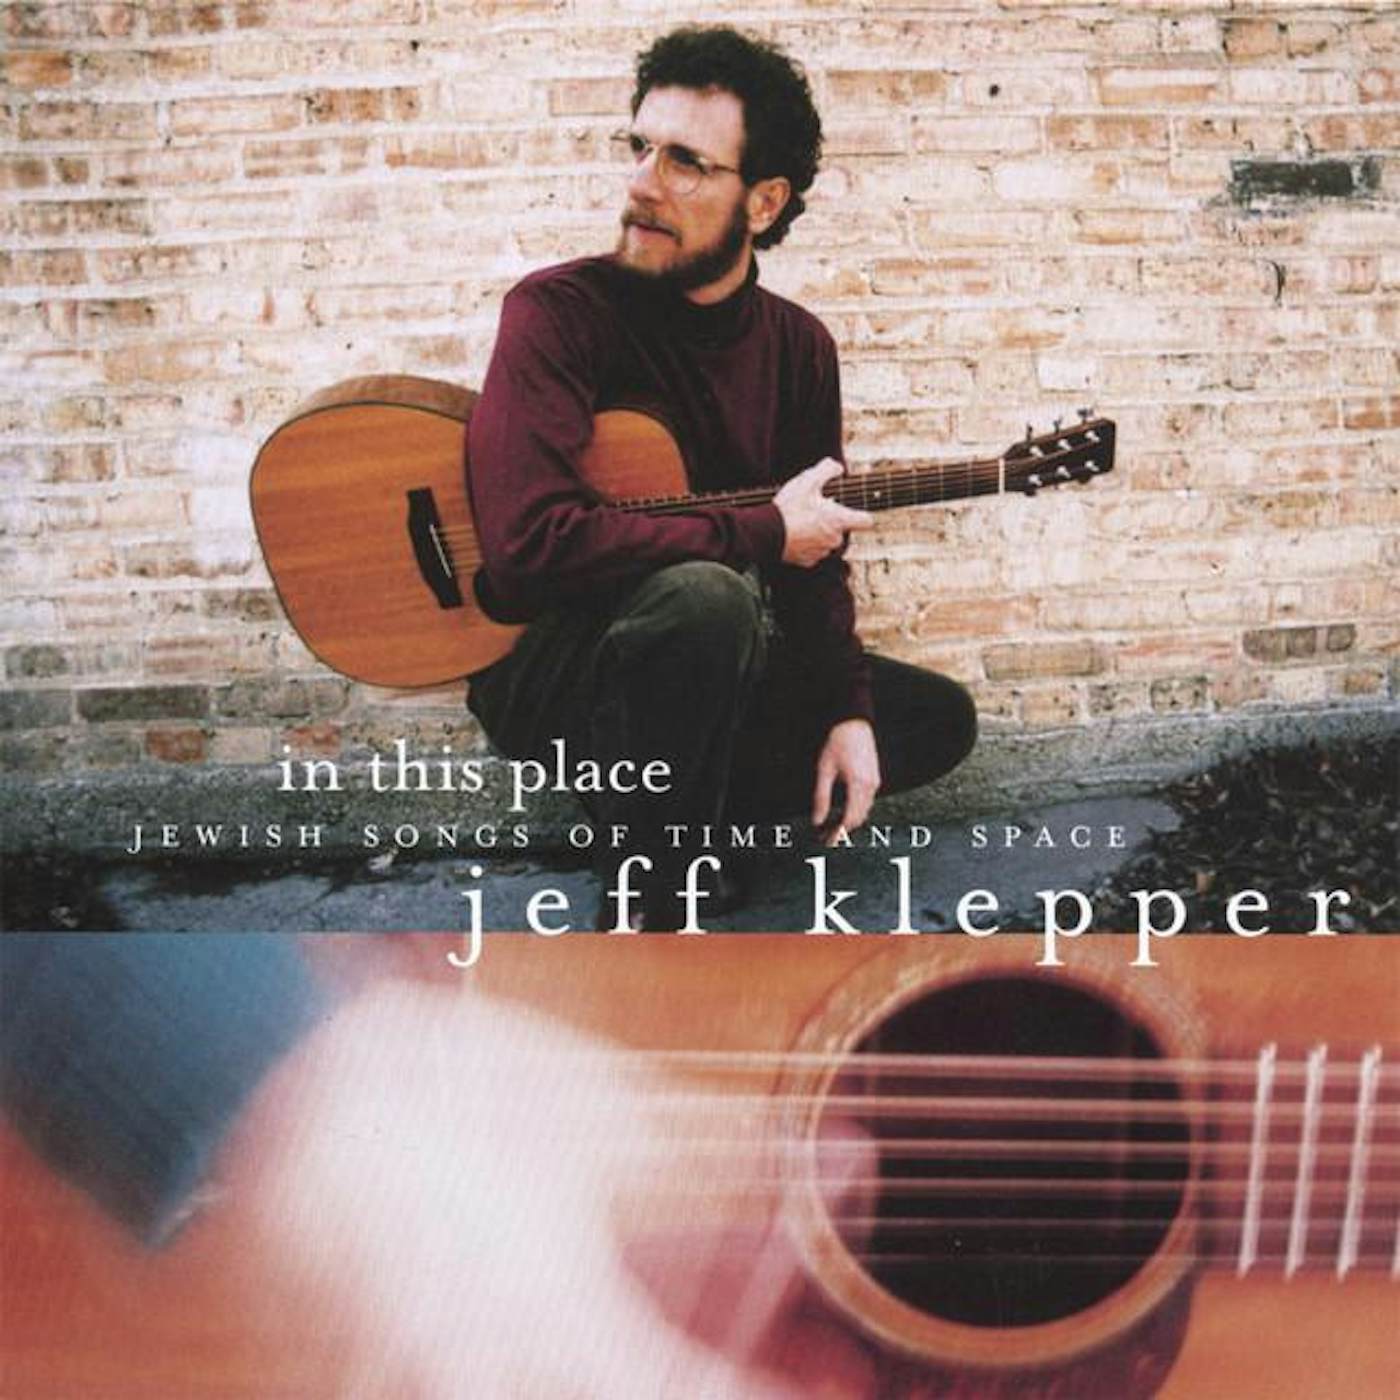 Jeff Klepper